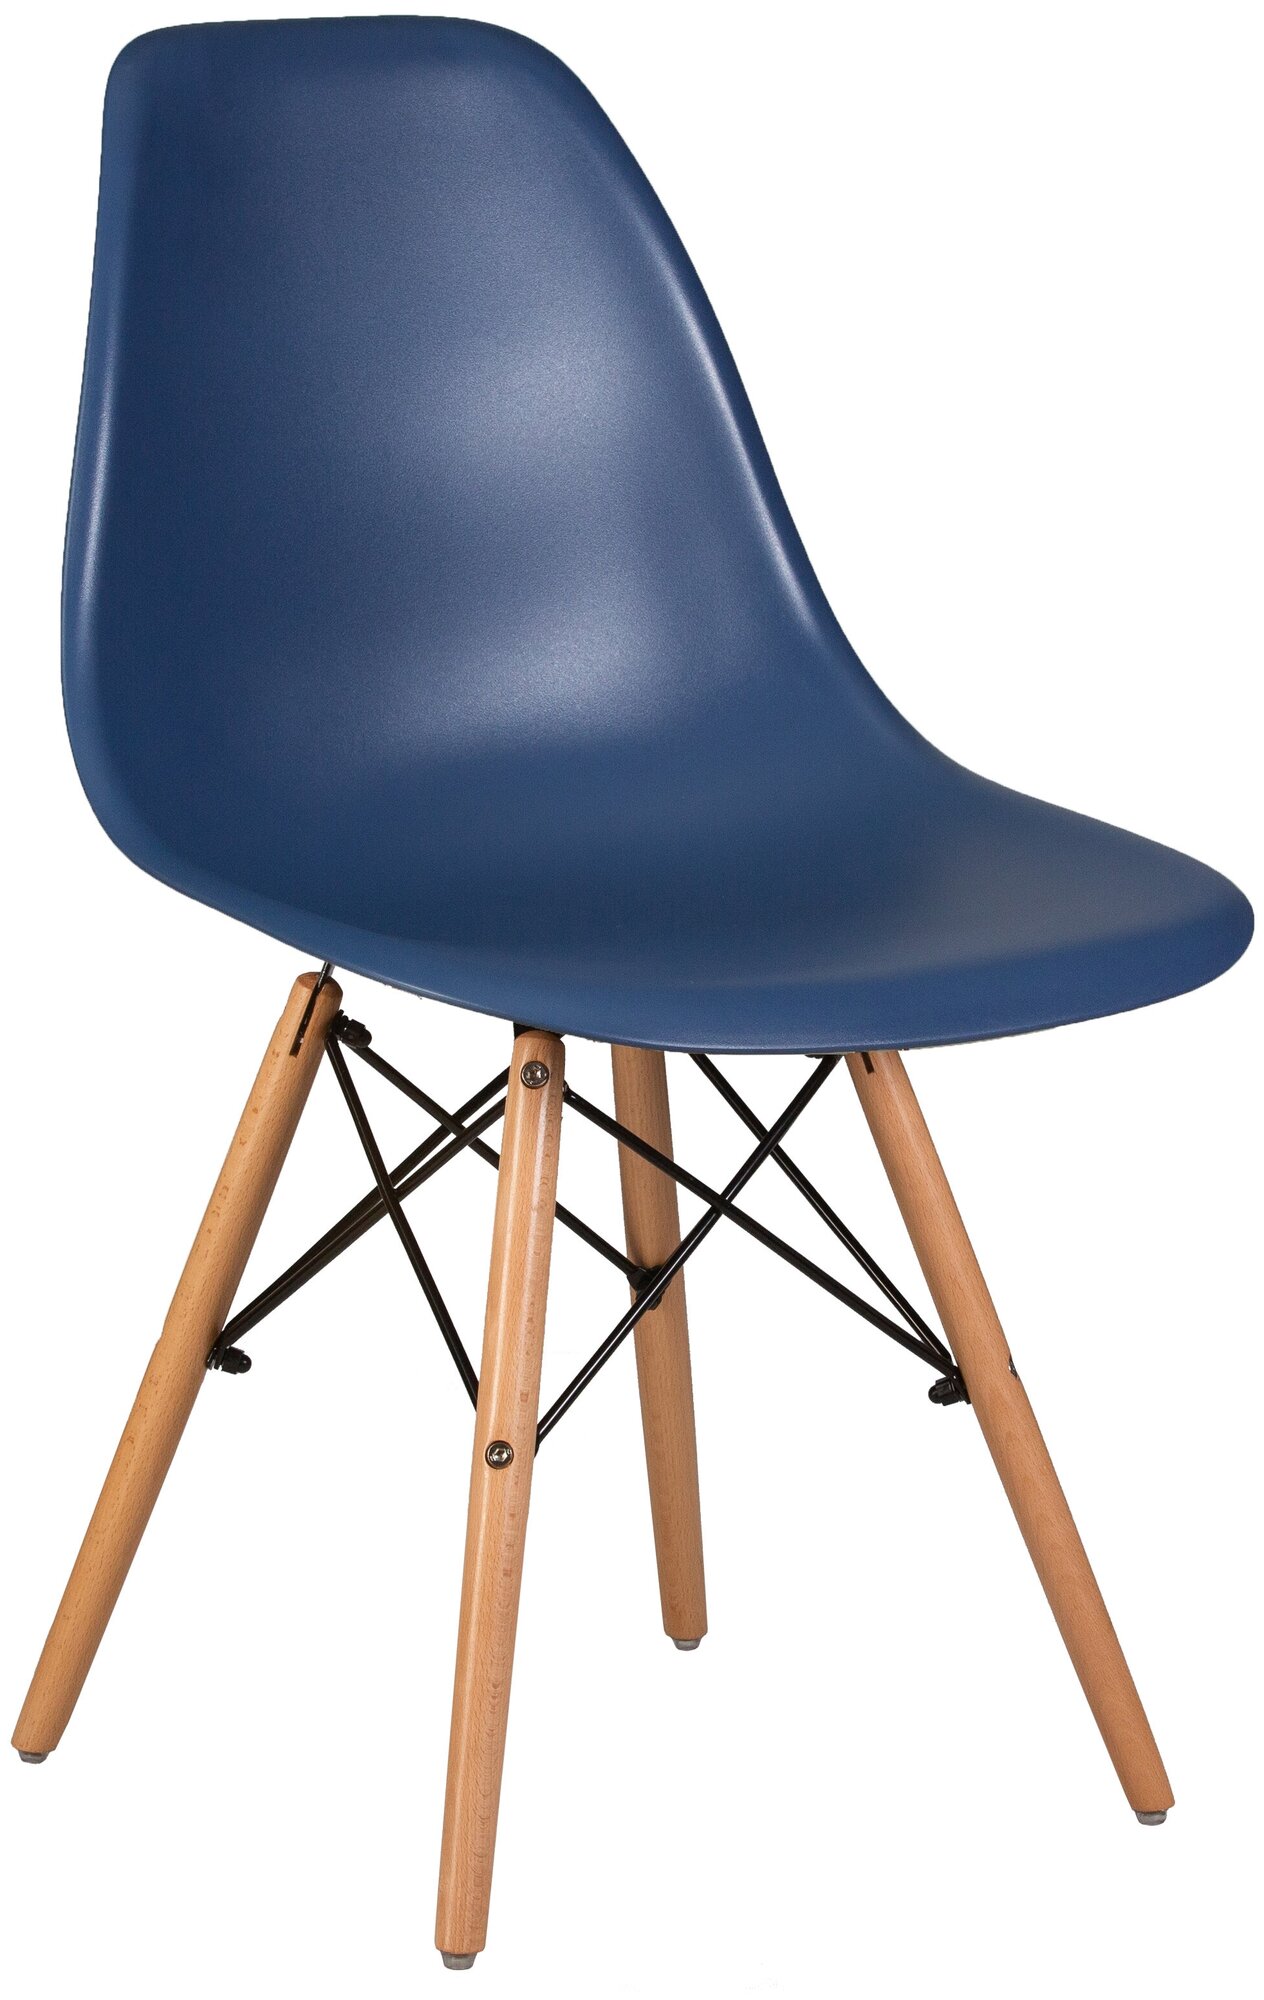 Стул обеденный DSW LMZL-PP638 цвет сиденья тёмно-синий (BE-12), цвет основания светлый бук